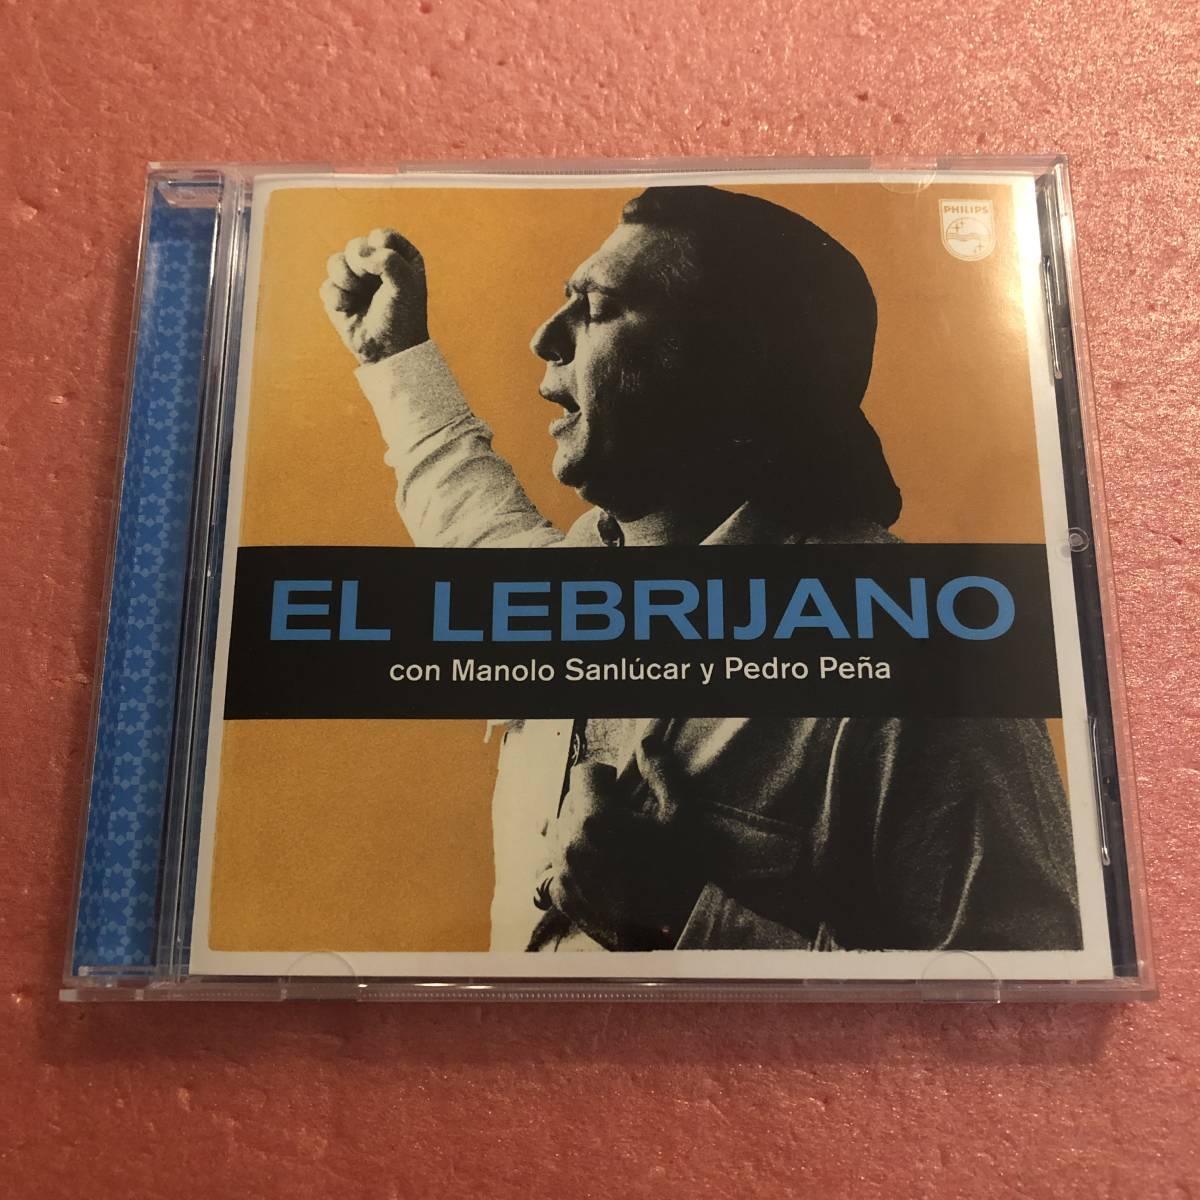 CD El Lebrijano Con Manolo Sanlucar Y Pedro Pena L re желтохвост - -no